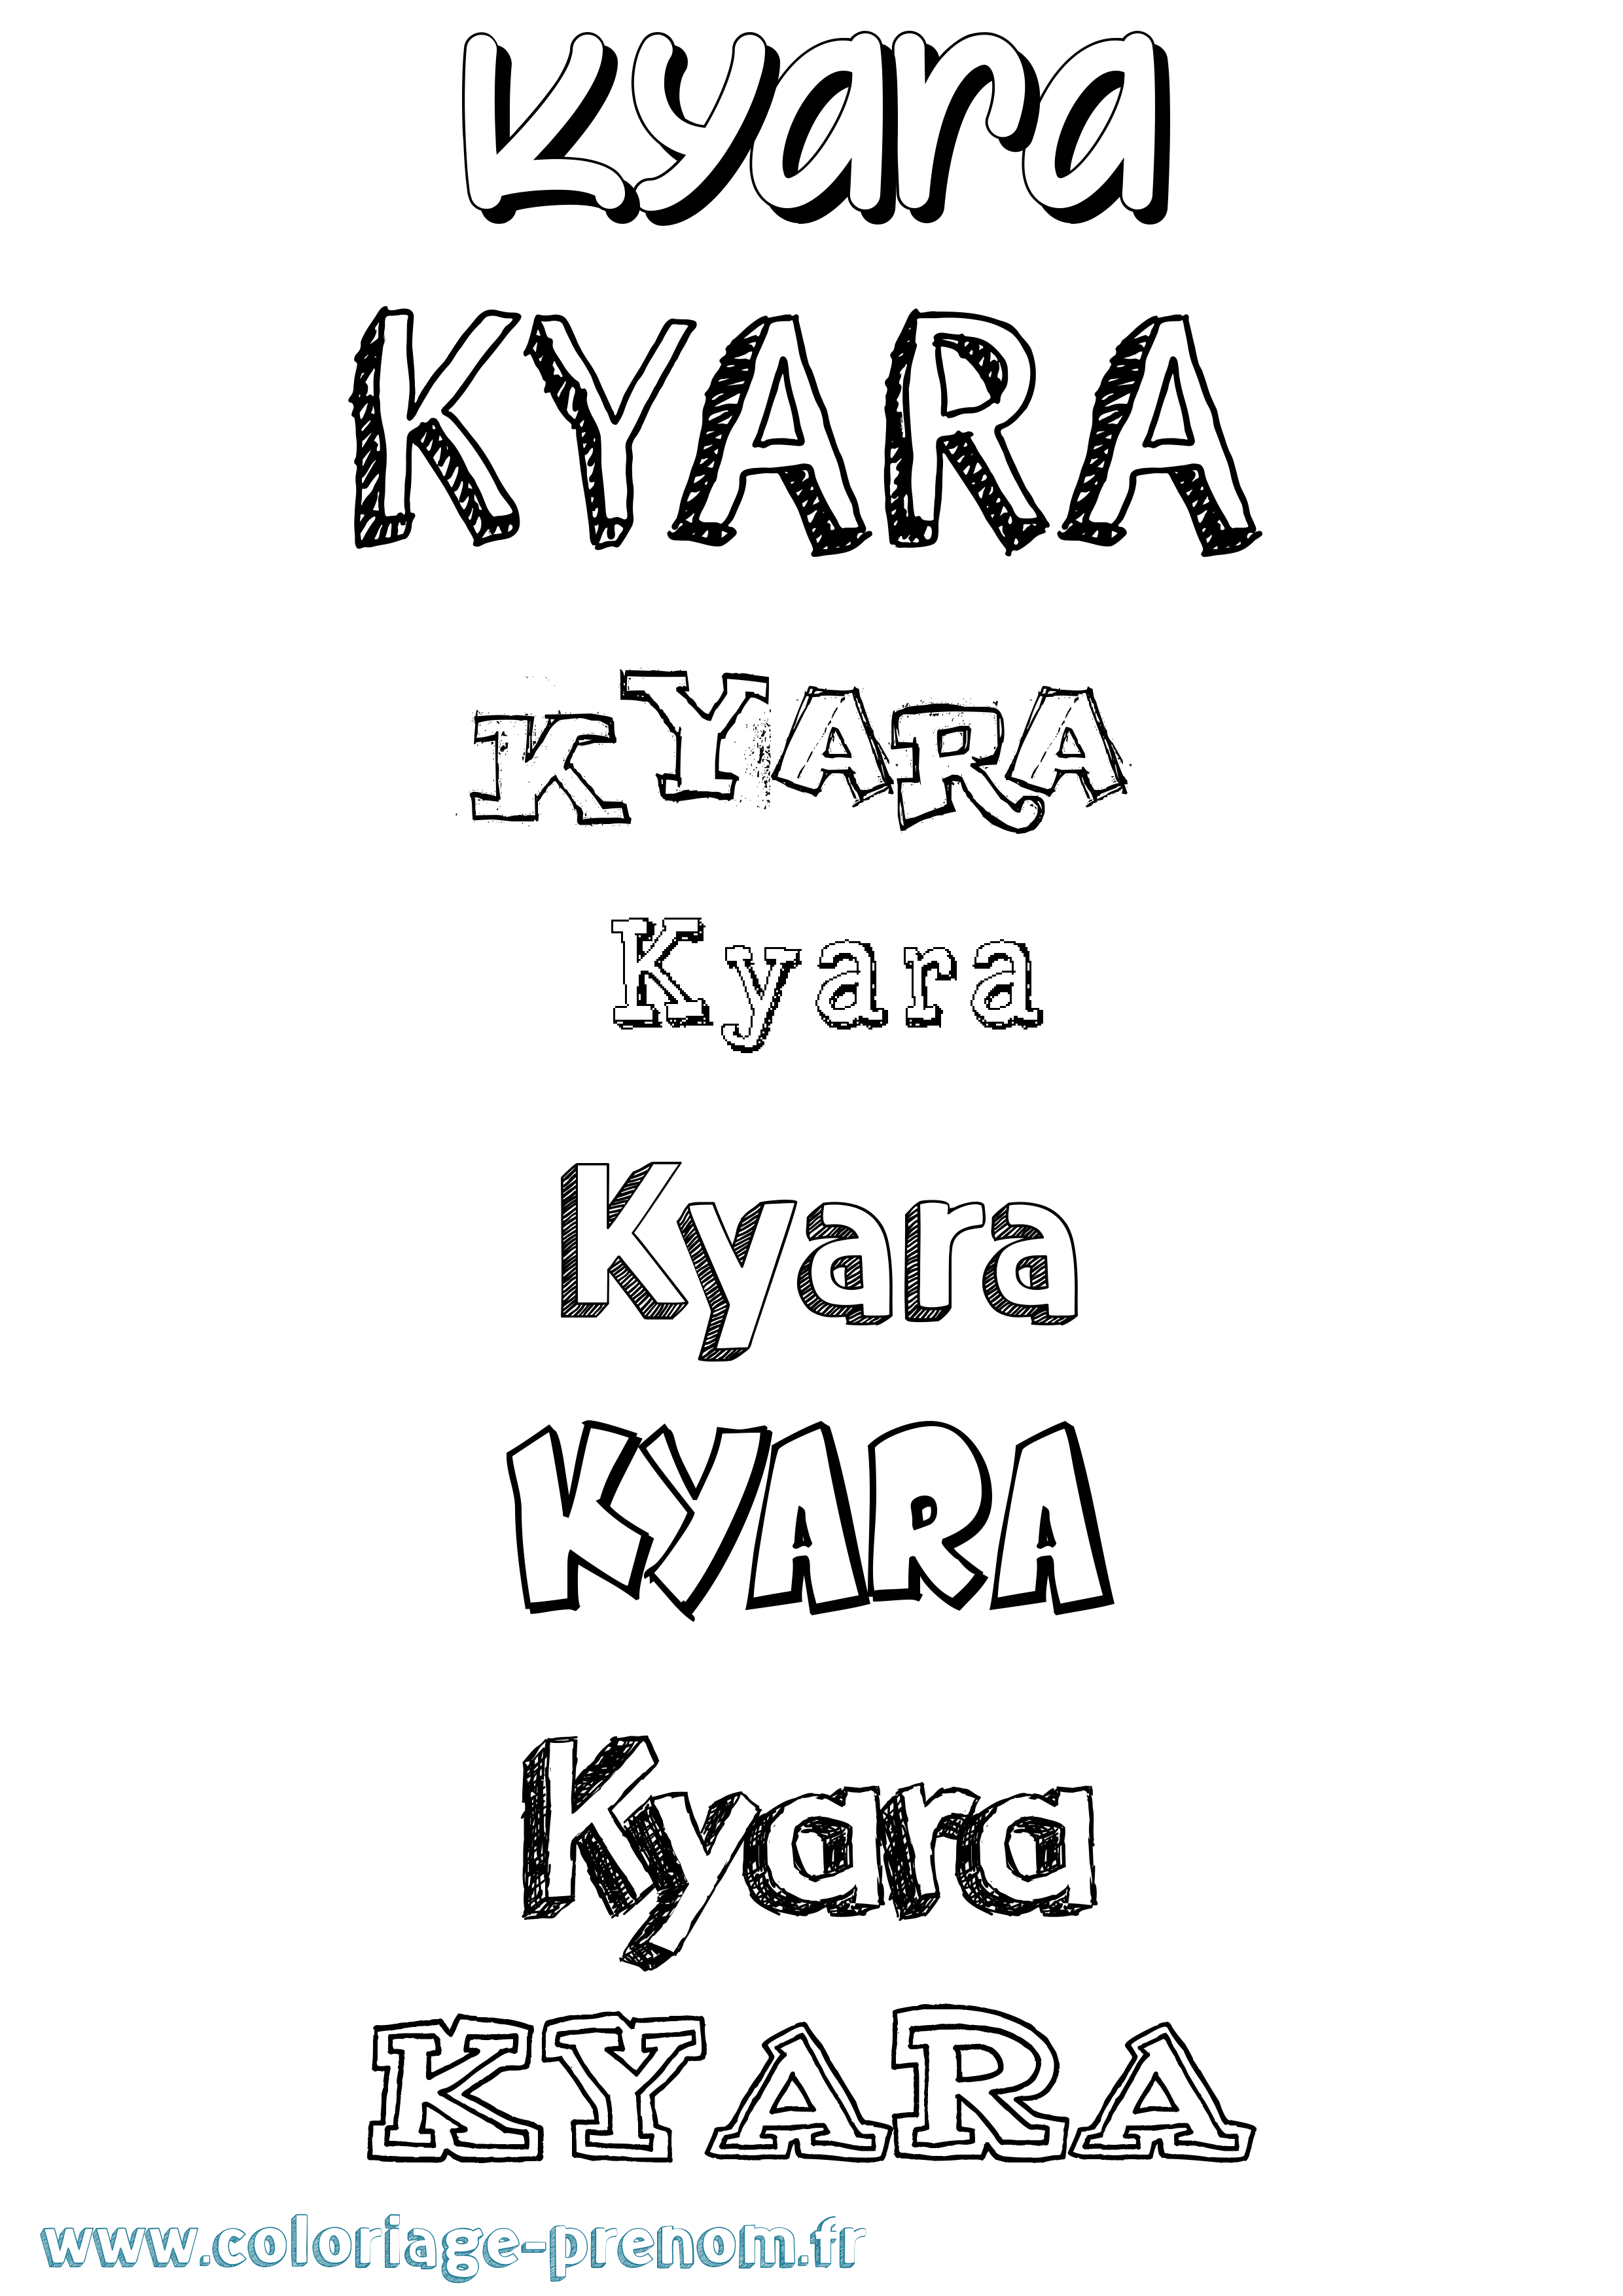 Coloriage prénom Kyara Dessiné